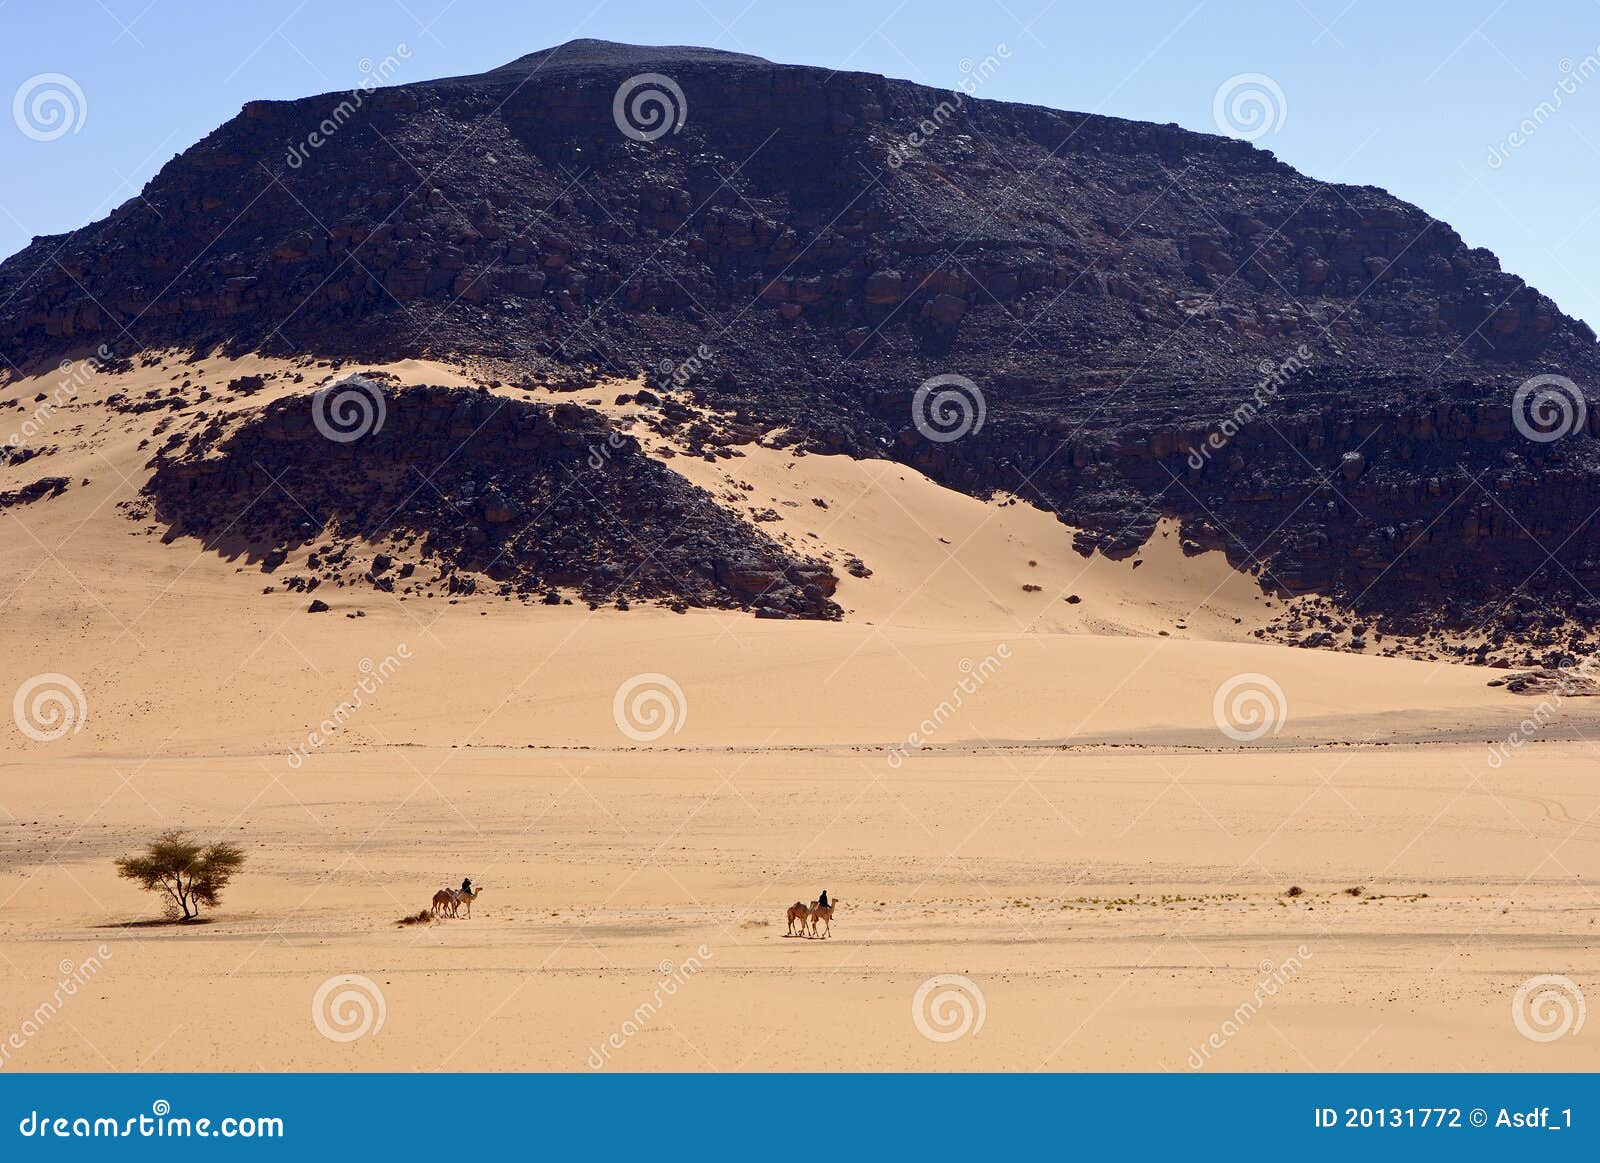 touareg nomads crossing a vast desert